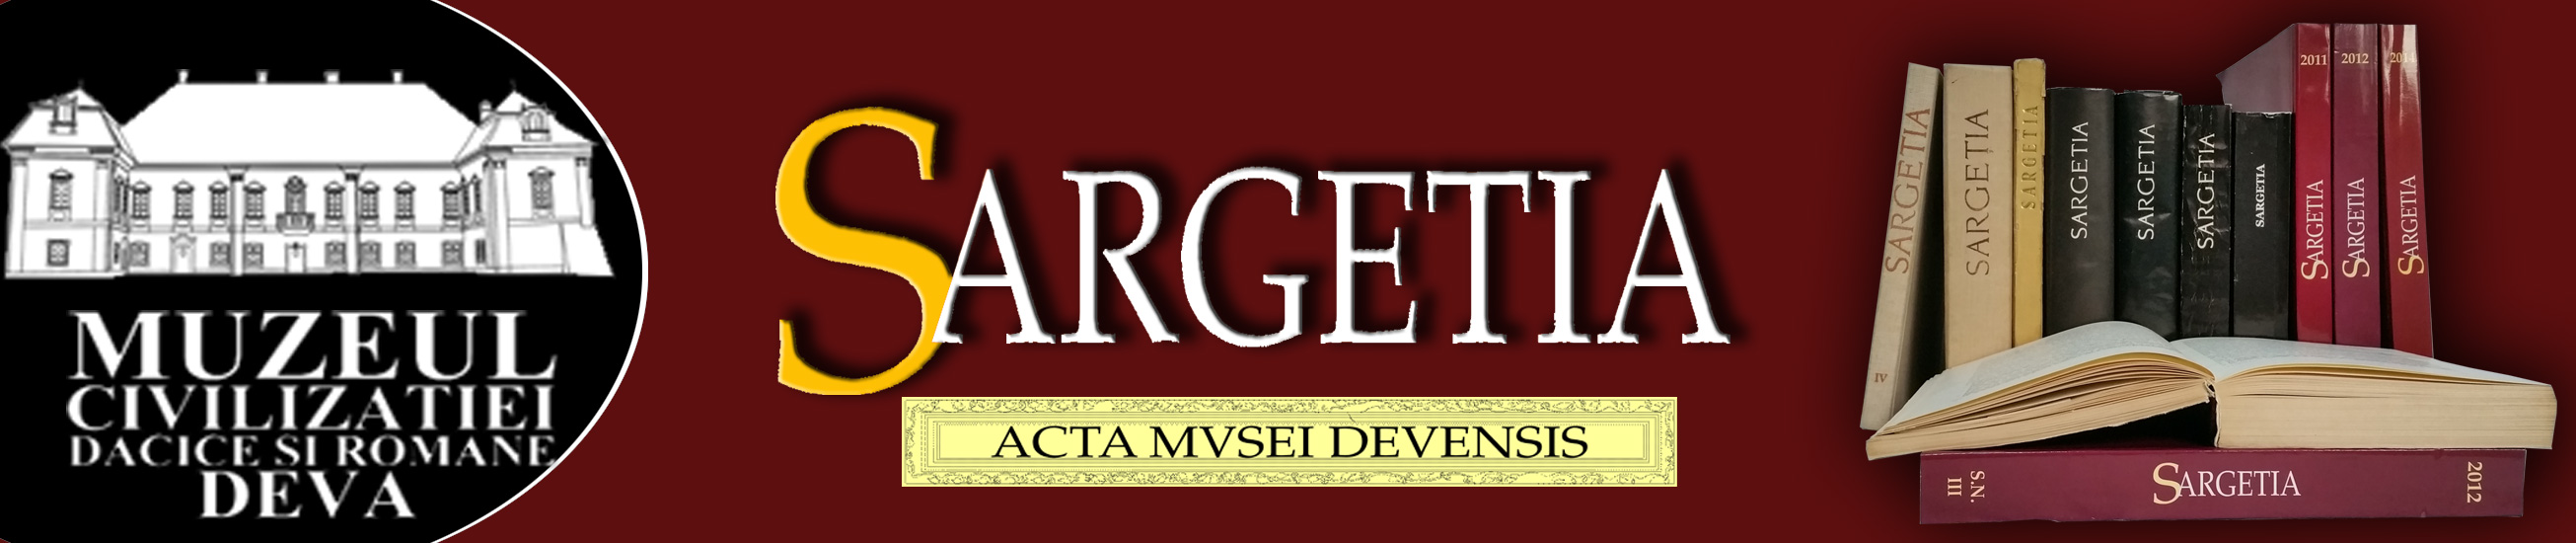 Sargetia. Acta Musei Devensis